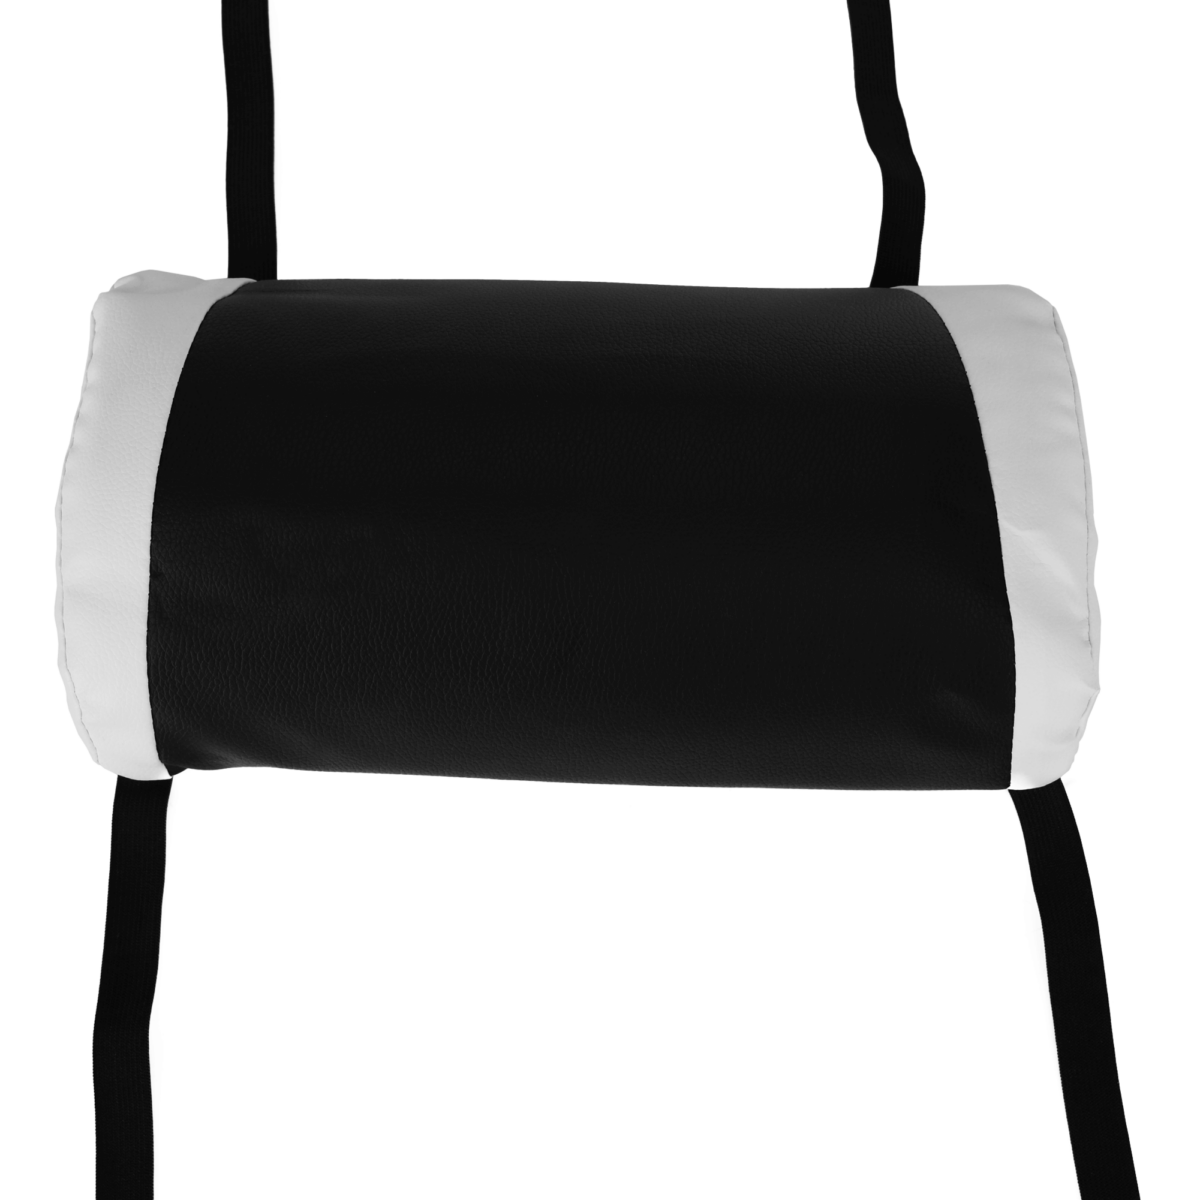 Irodai/gamer szék RGB LED világítással, fekete/fehér, JOVELA